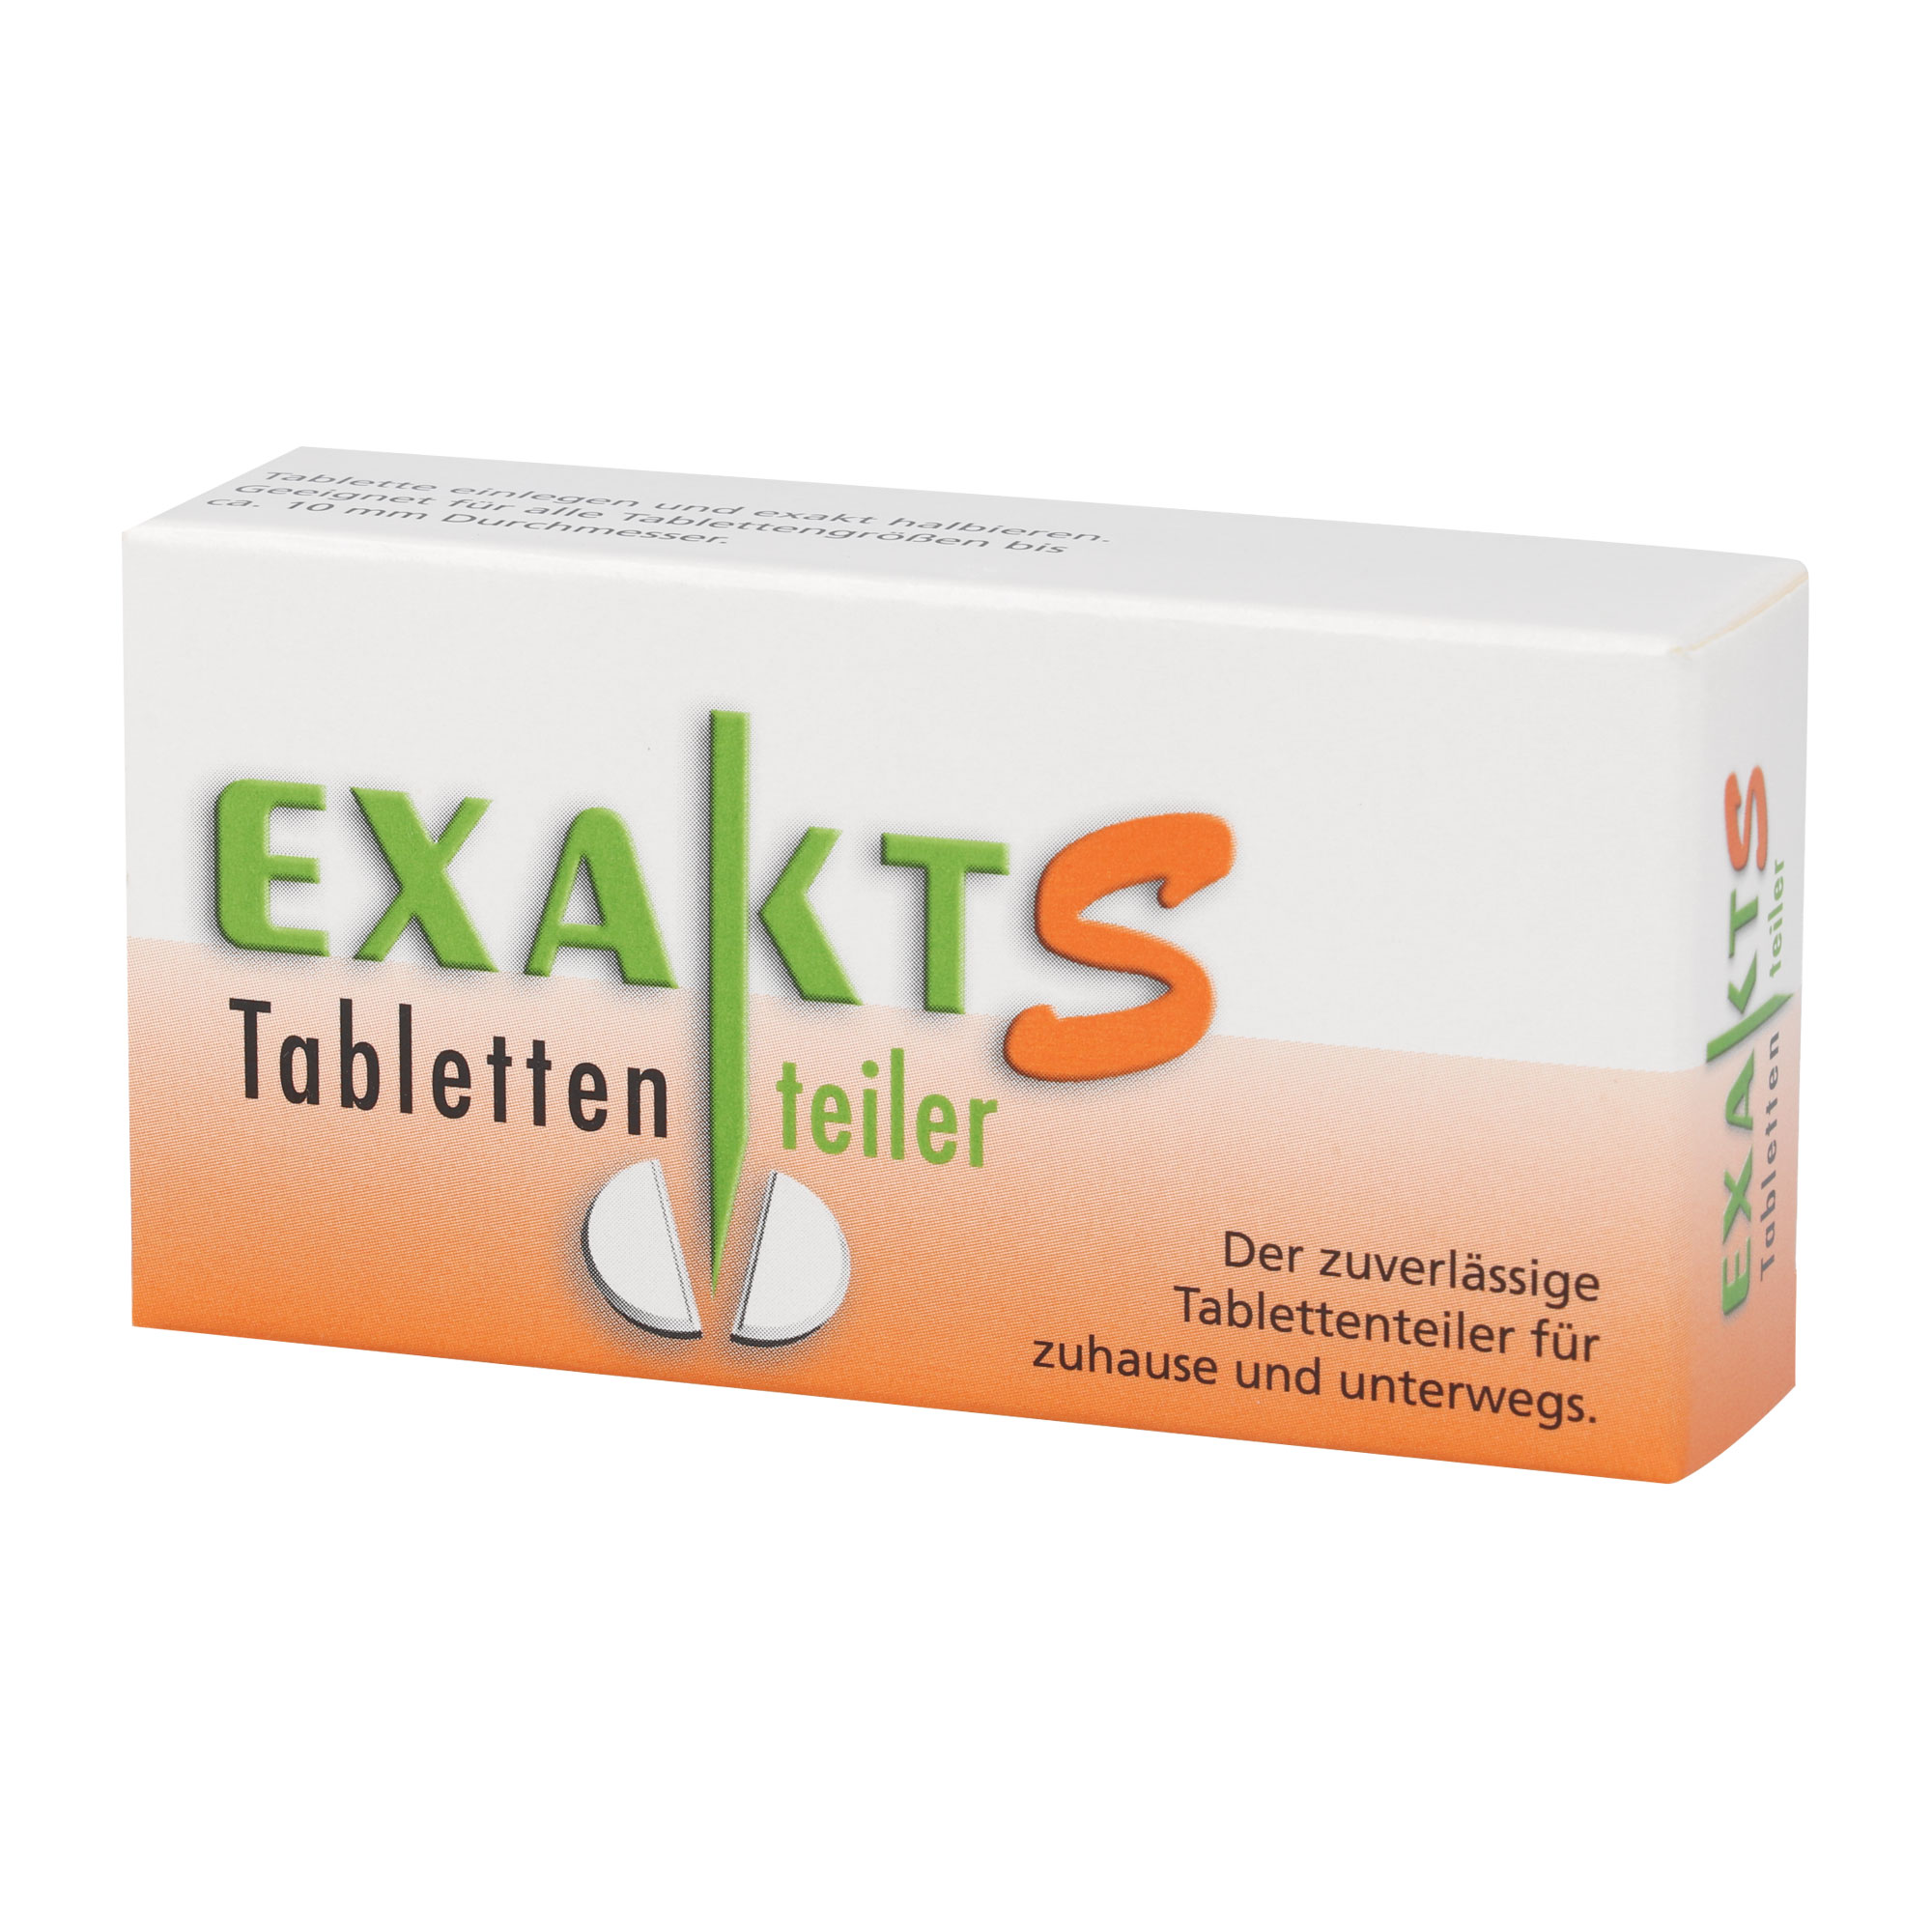 Tablettenteile für Tabletten bis 10 mm Durchmesser. Zum halbieren und vierteln von Tabletten.